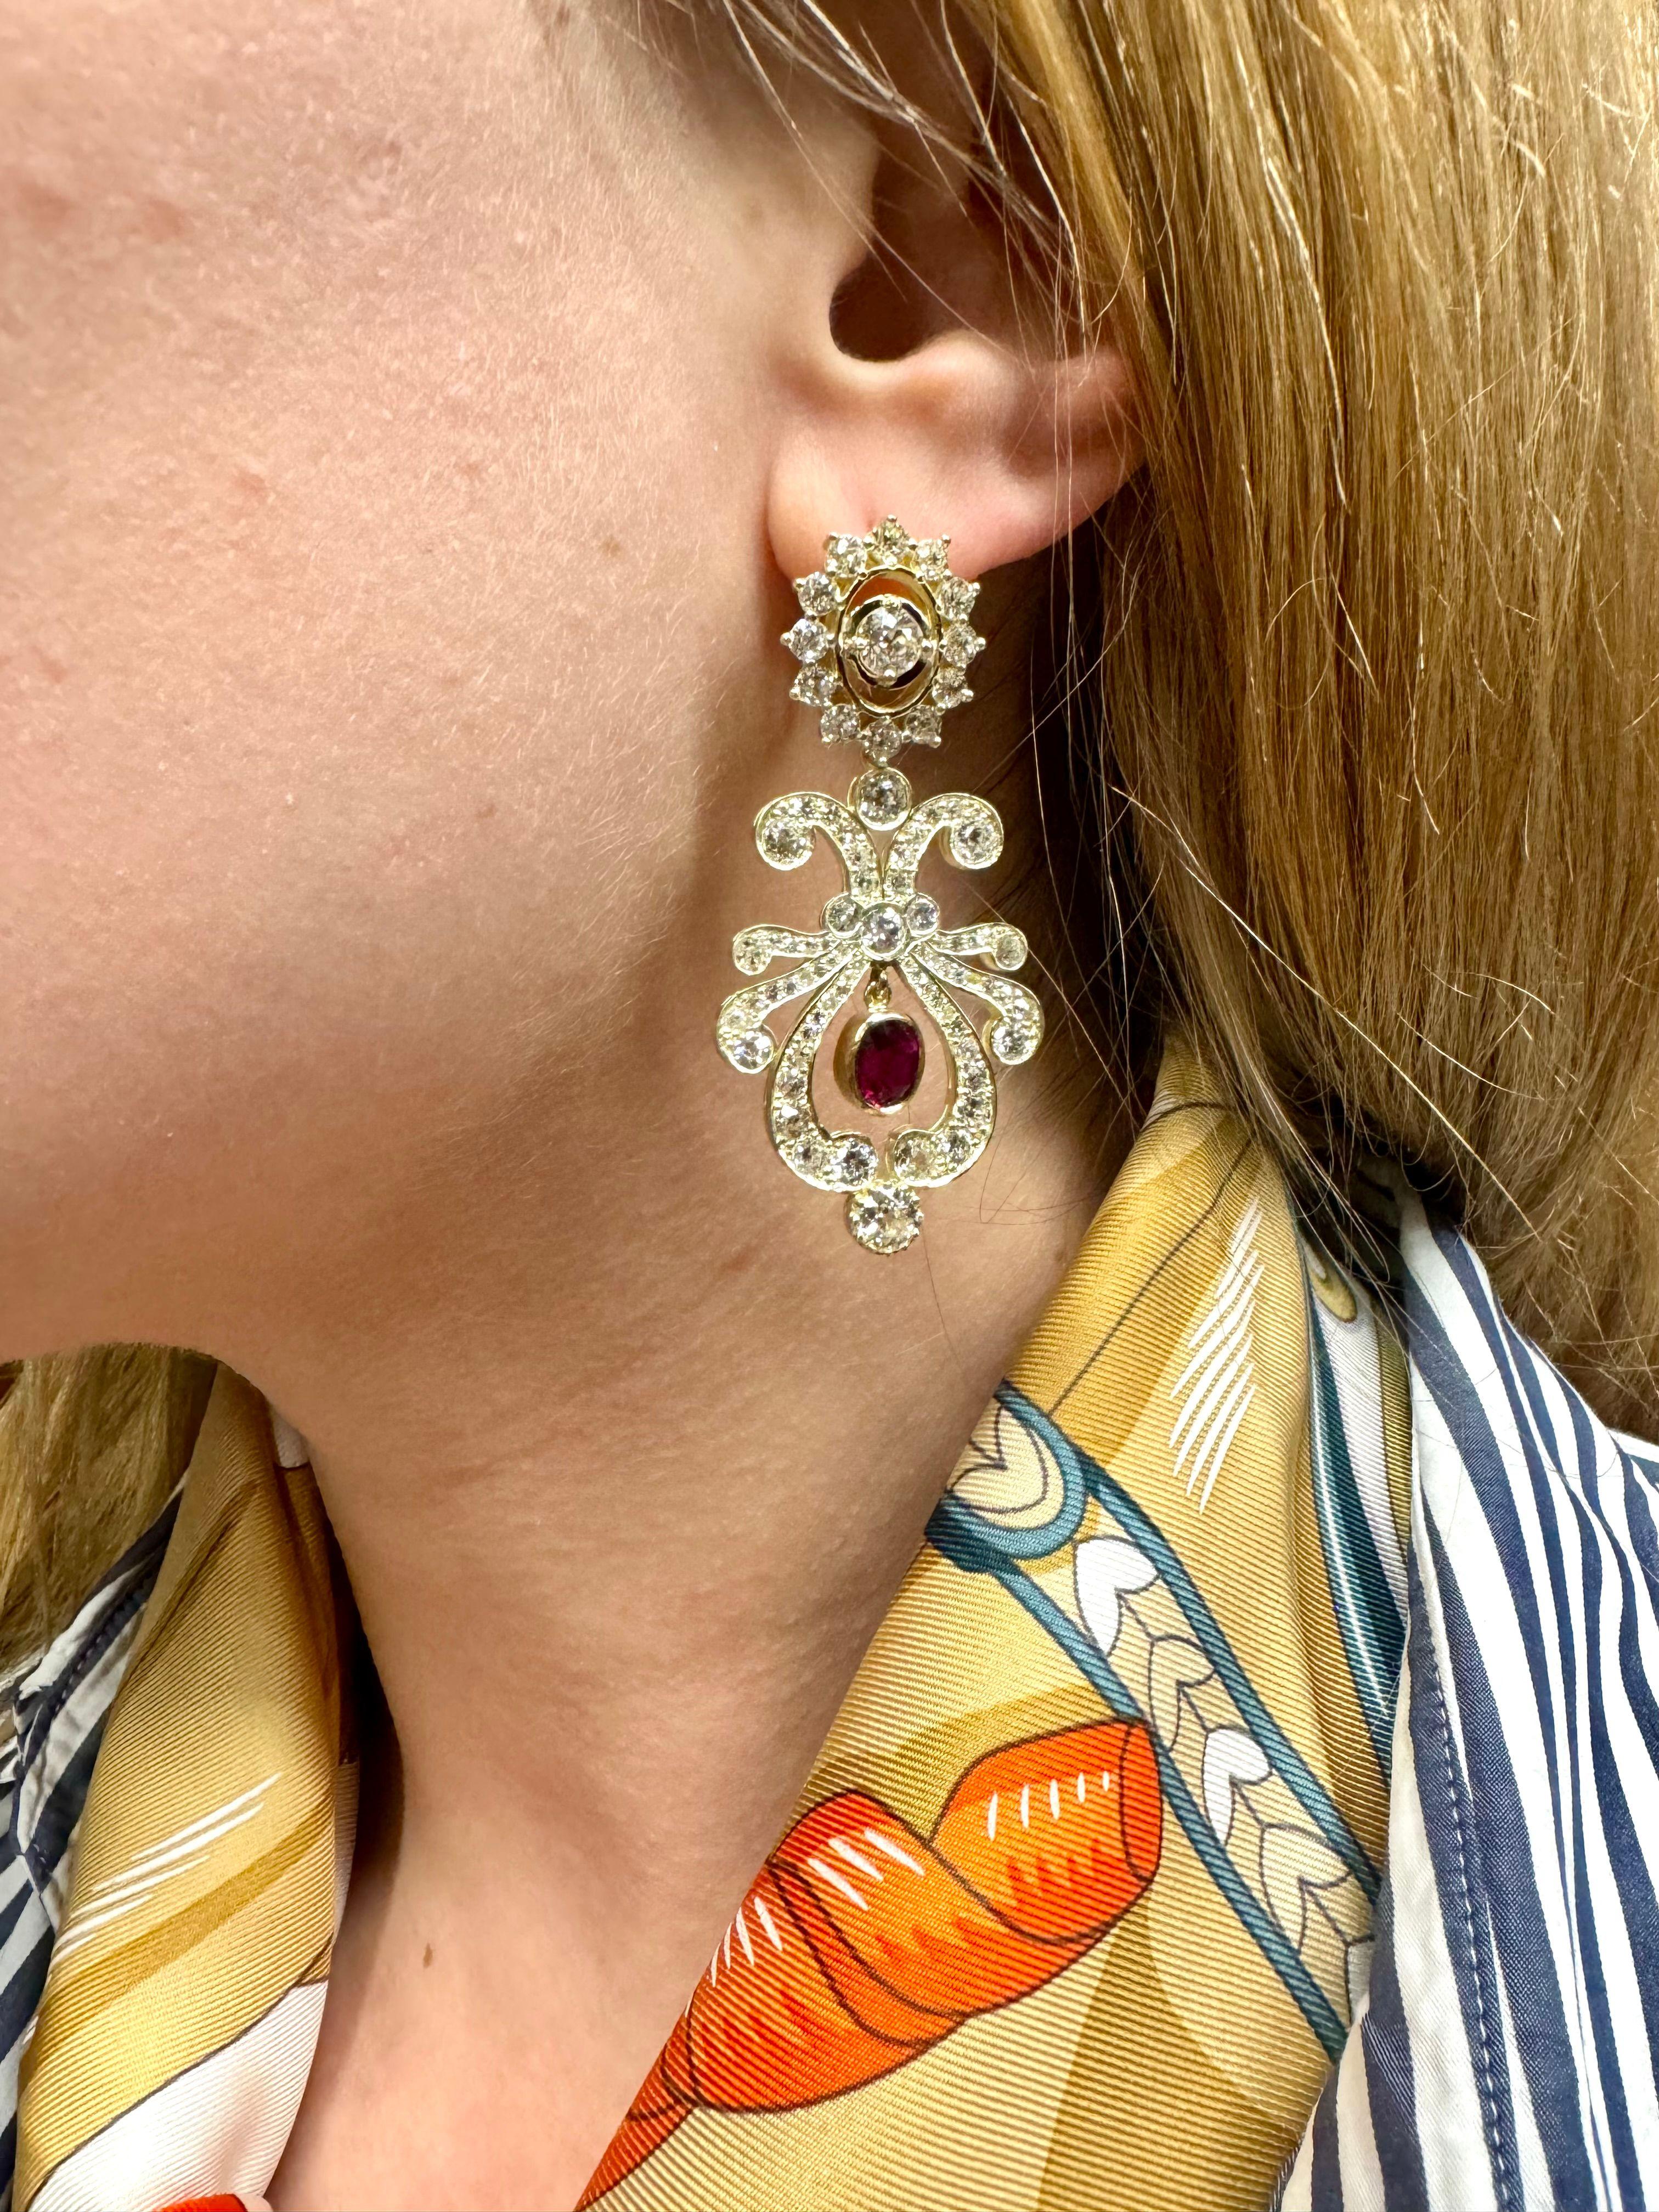 Vintage-Ohrringe mit natürlichen Rubinen und Diamanten, aus Russland aus dem XX Jahrhundert.

Zwei Rubine mit einem Gesamtgewicht von 2,40ct im ovalen Facettenschliff. Rot, lebhafte Farbe. Keine Anzeichen einer Erwärmung.

Gesamtgewicht des